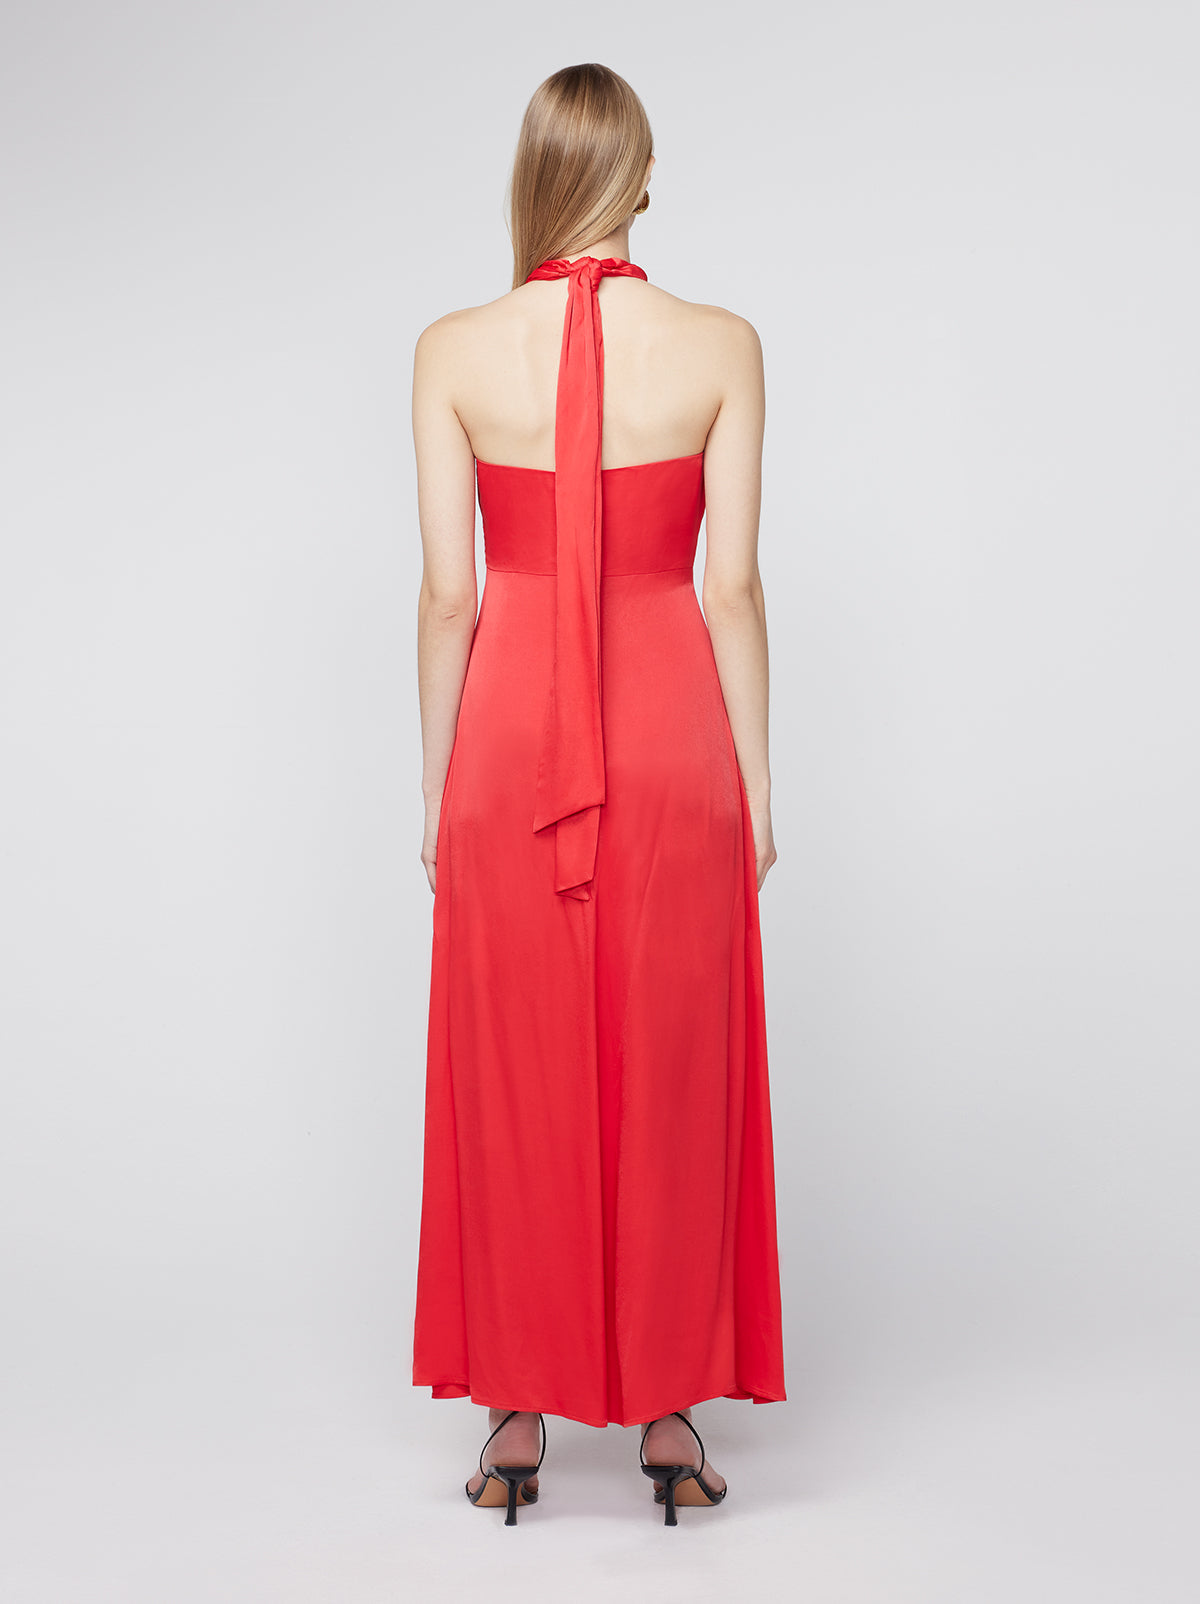 Neve Red Satin Halter Dress By KITRI Studio